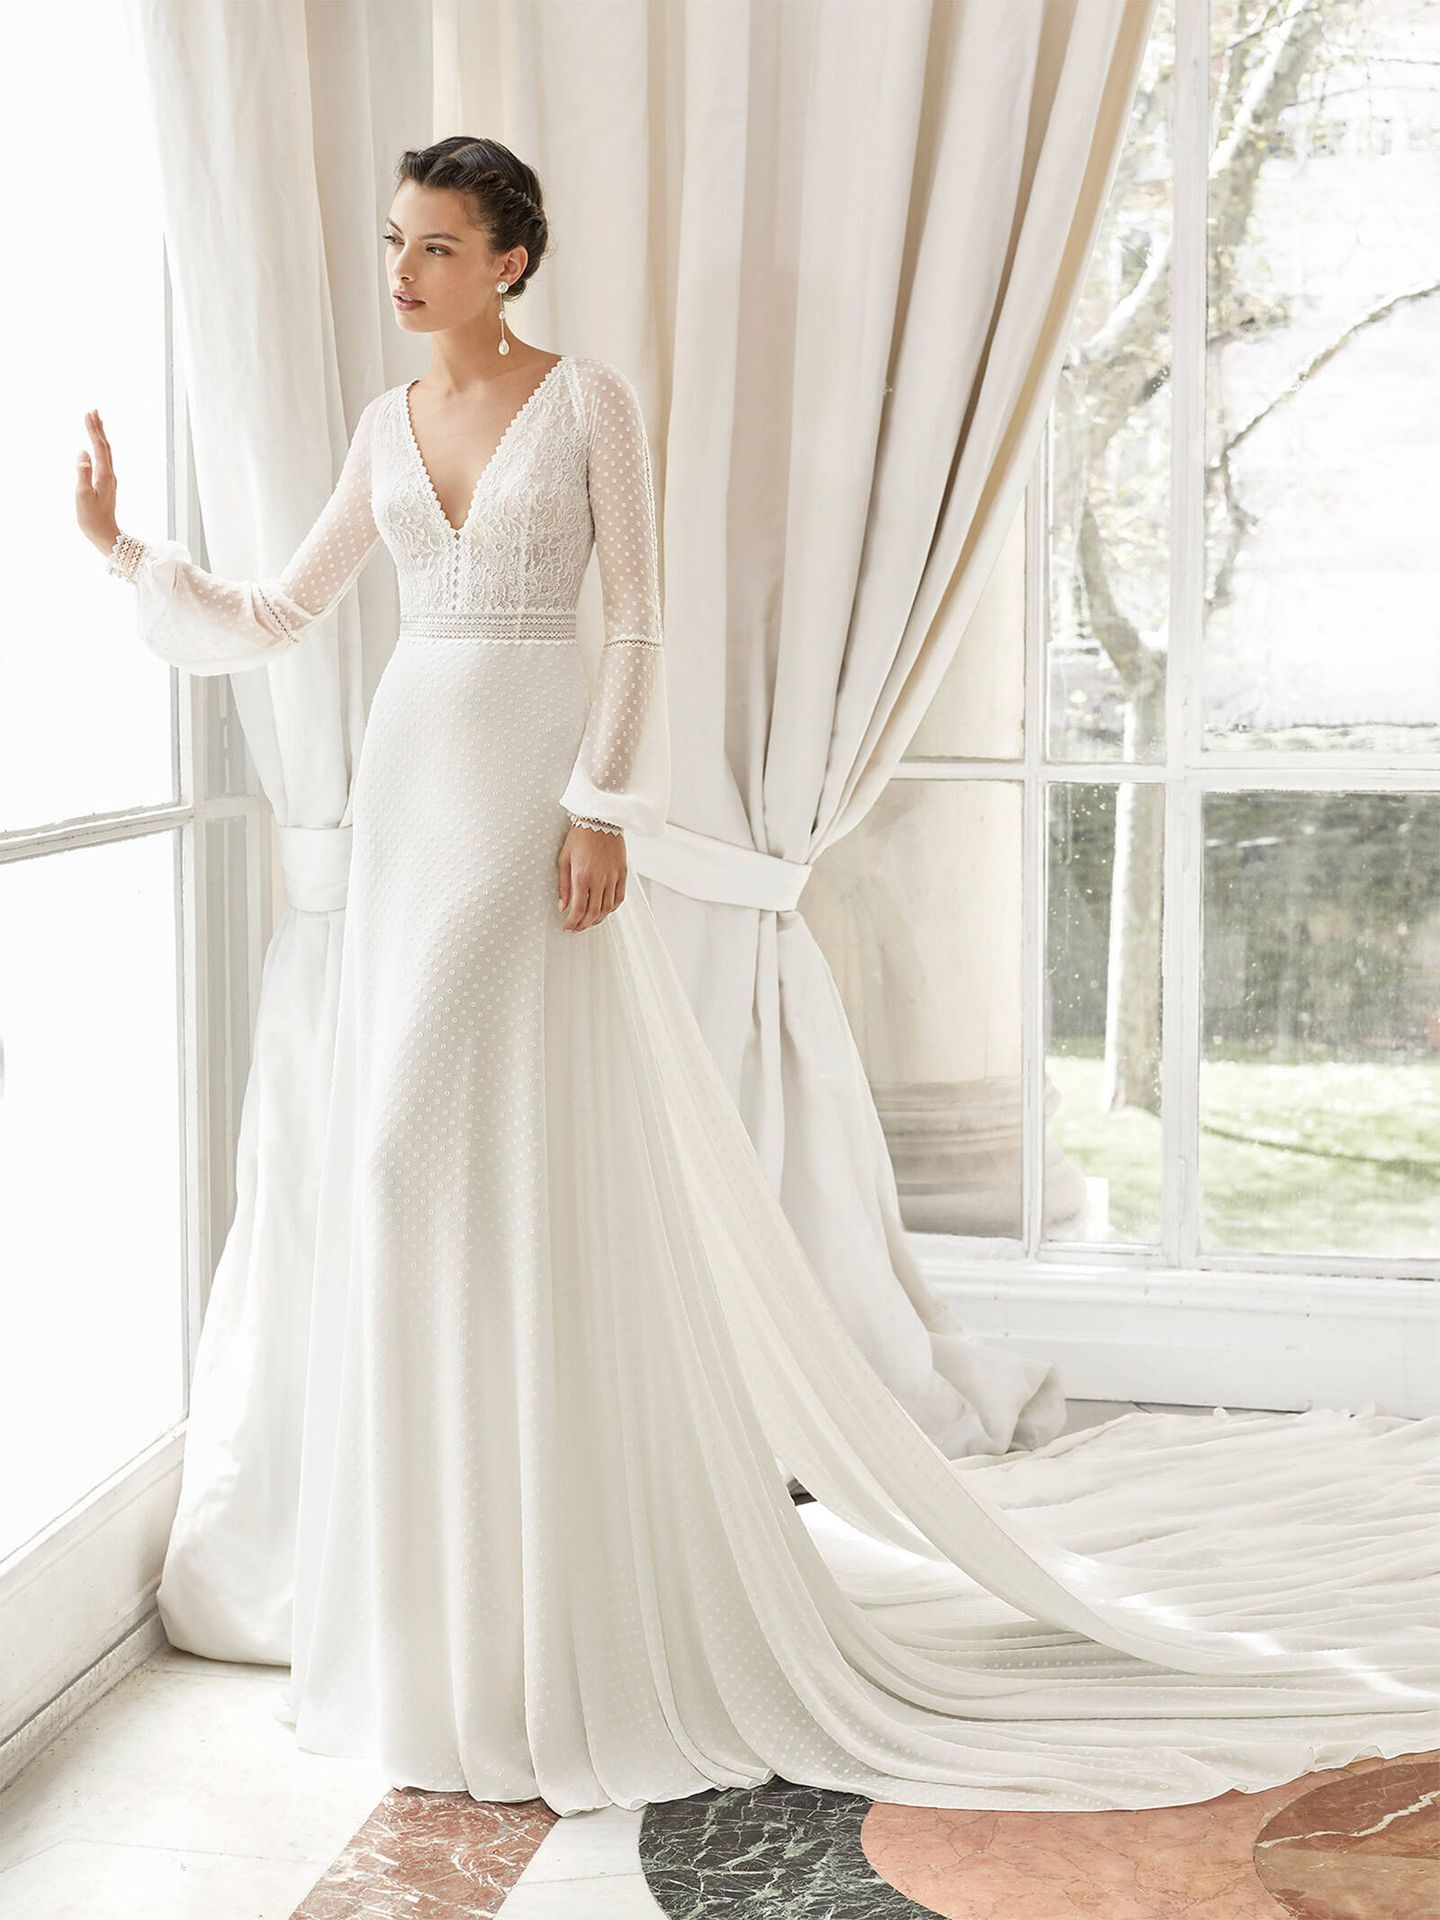 simplemente chocar Destreza 5 impresionantes vestidos de novia de la nueva colección 2022 de Rosa Clará